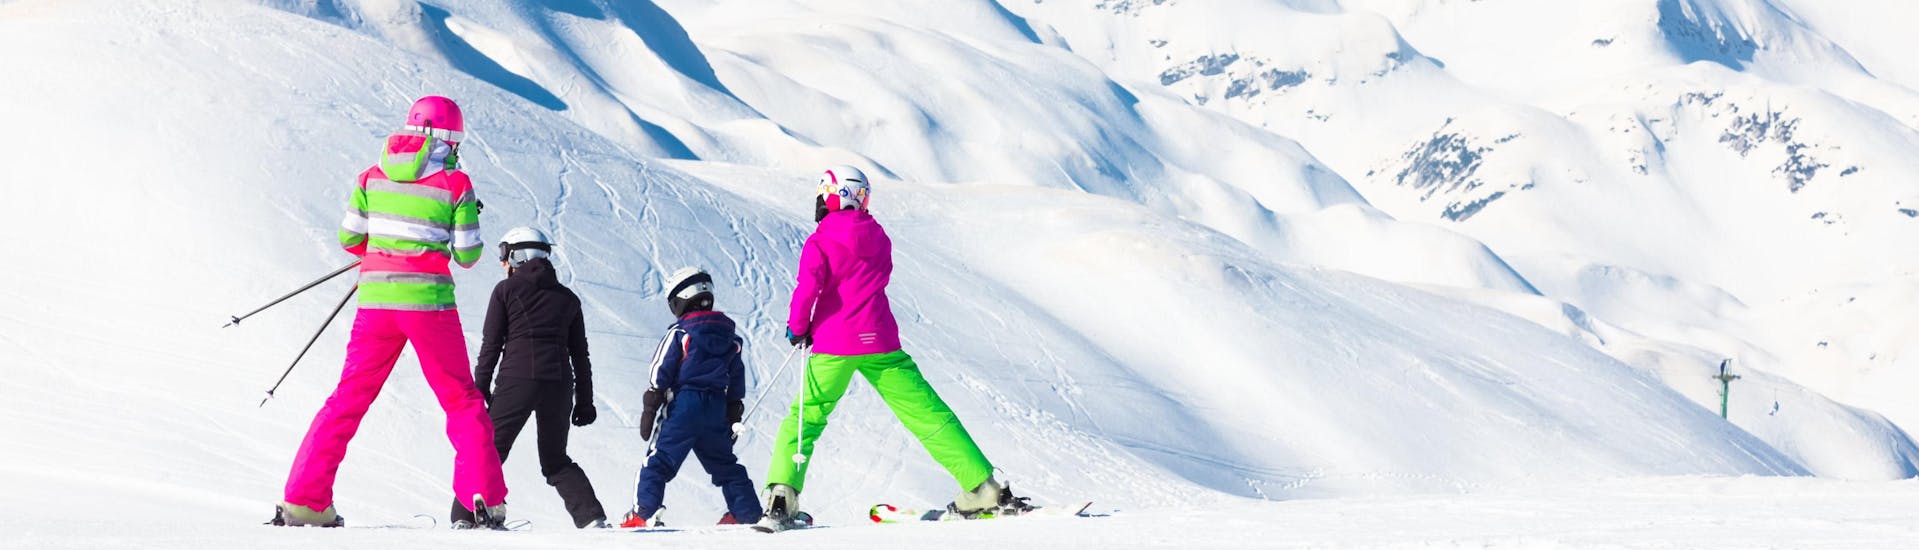 Eine Familie fährt die Pisten des Vogel Ski Center in Slowenien hinunter, wo die örtlichen Skischulen ihre Skikurse anbieten.